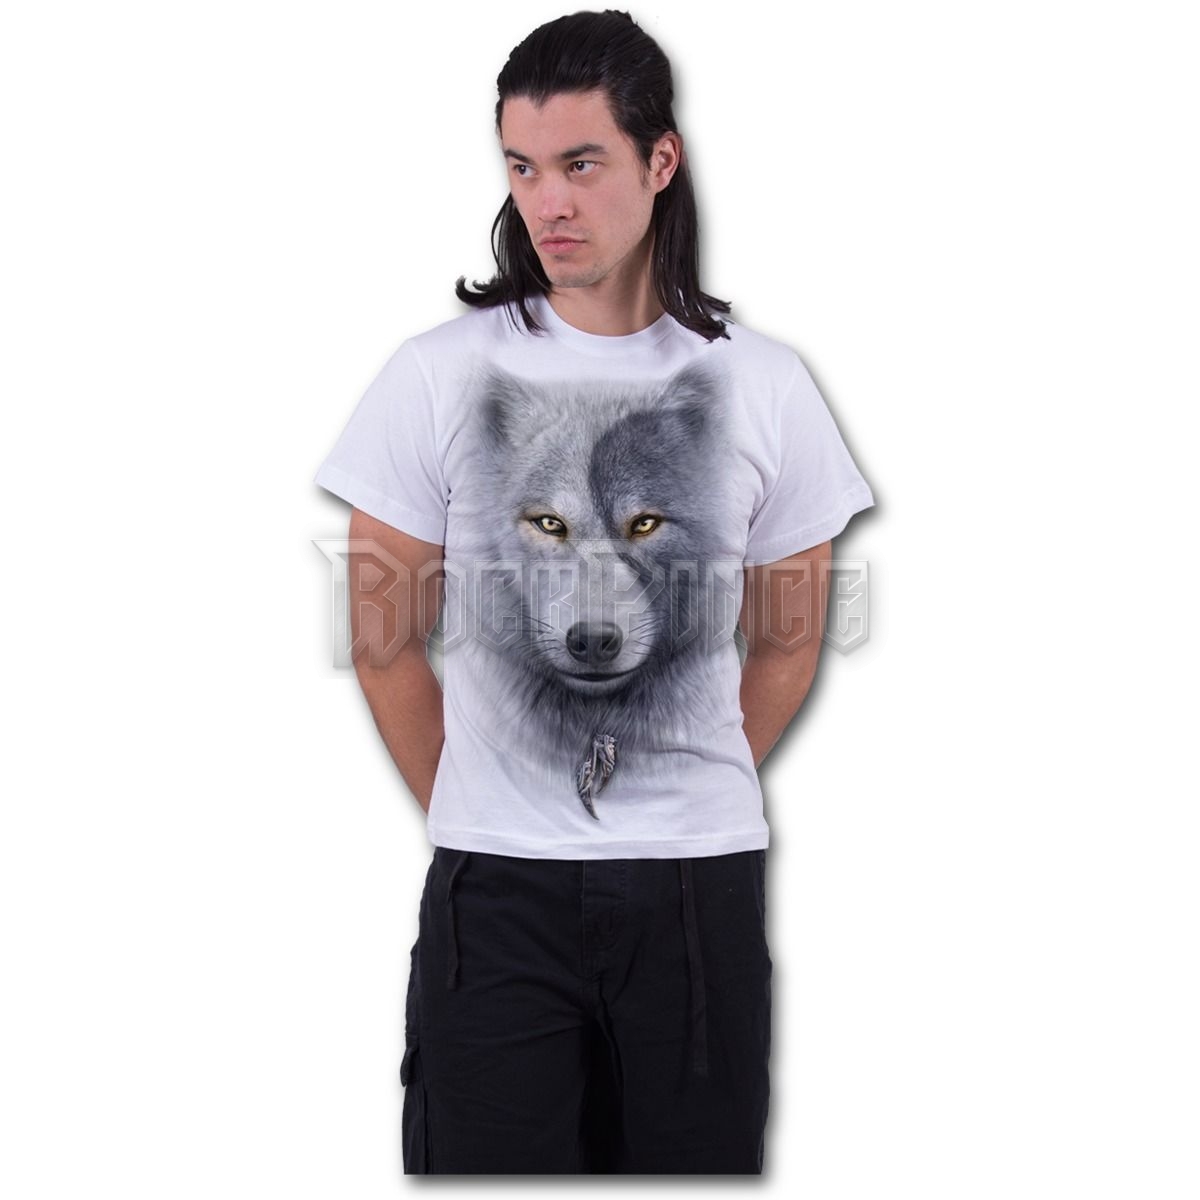 WOLF CHI - T-Shirt White (Plain) - T118M113